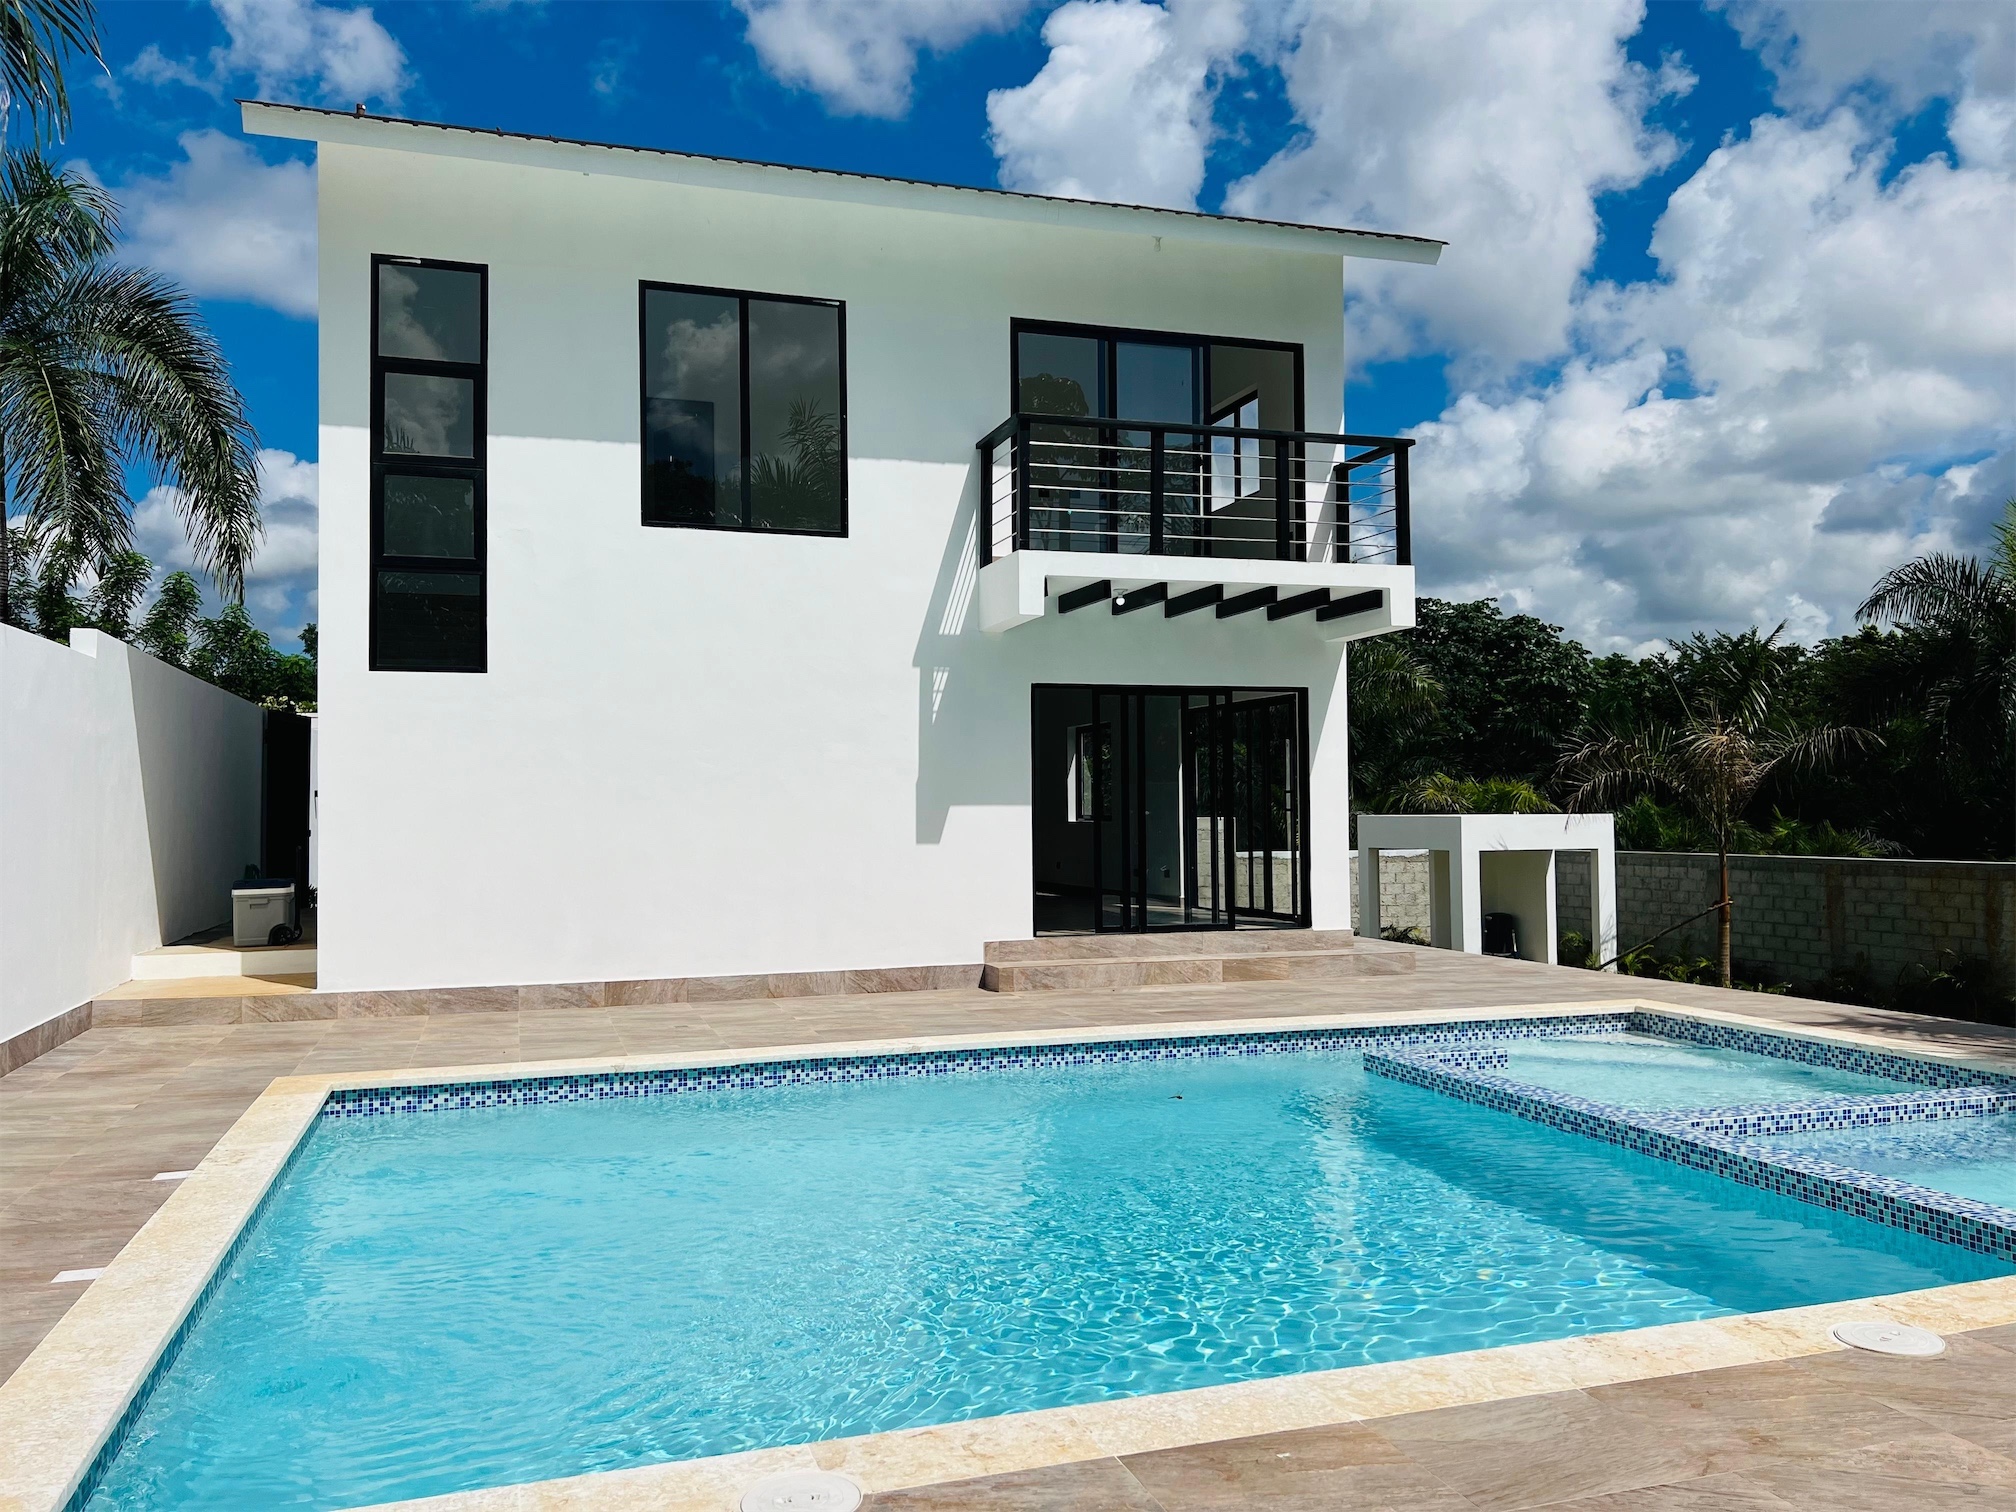 casas vacacionales y villas - Venta de Villa  con piscina en Matua la cuaba a 45 minutos de Santo Domingo